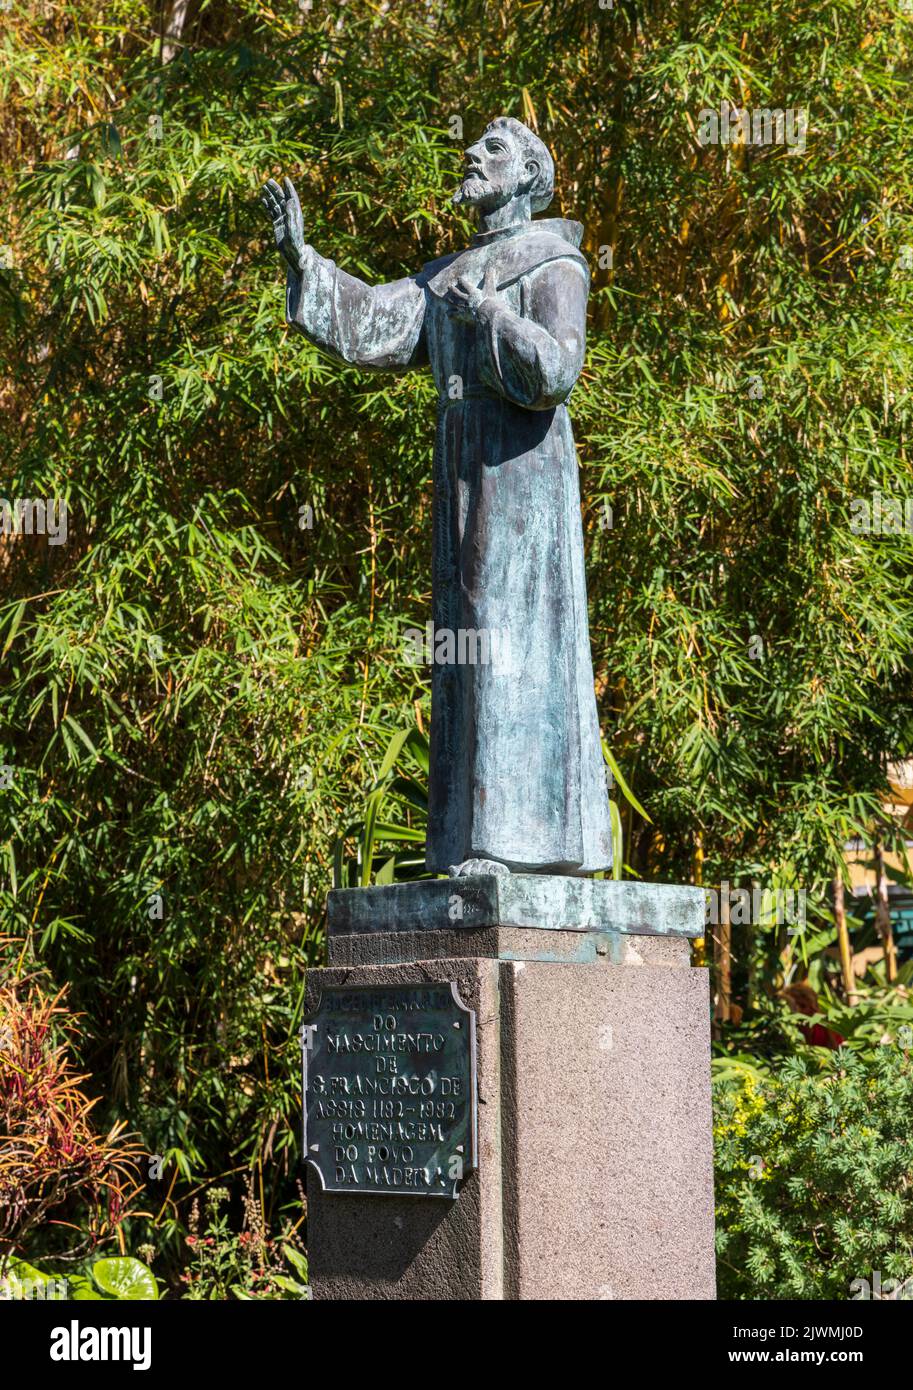 Statue de bronze de Saint François dans le jardin municipal de Funchal, Madère, Portugal Banque D'Images